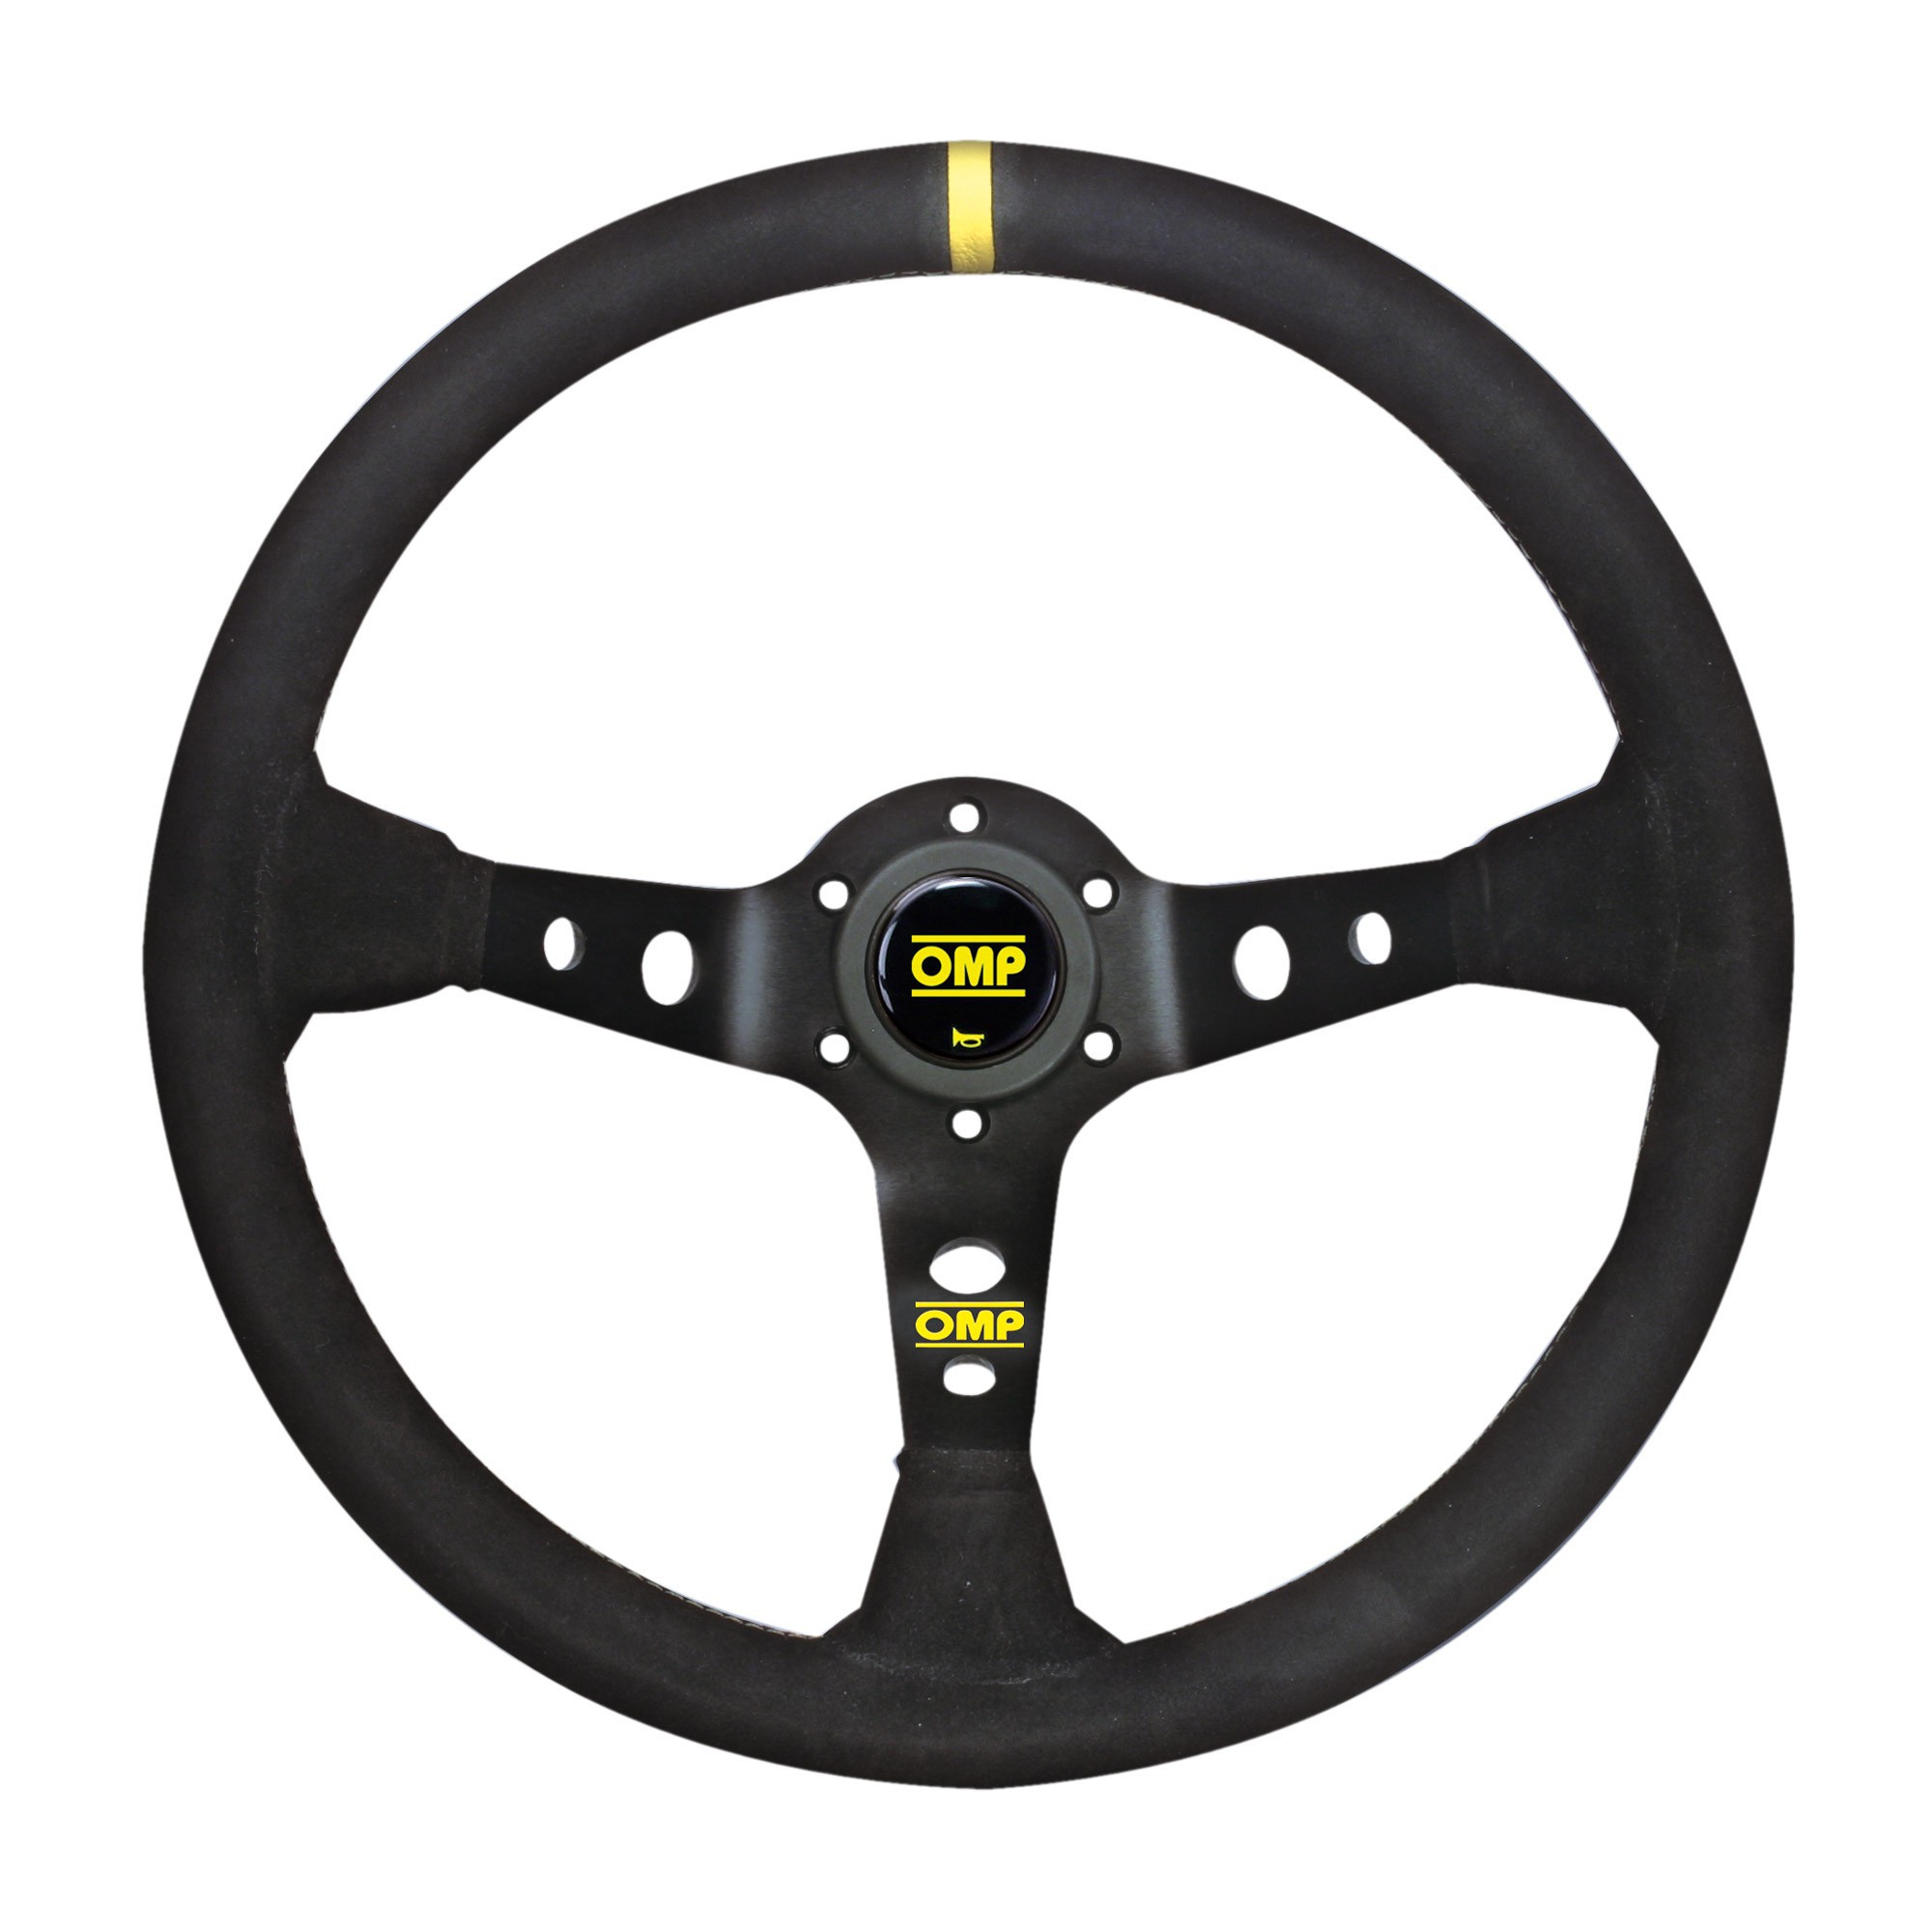 Racing steering wheel - CORSICA 330